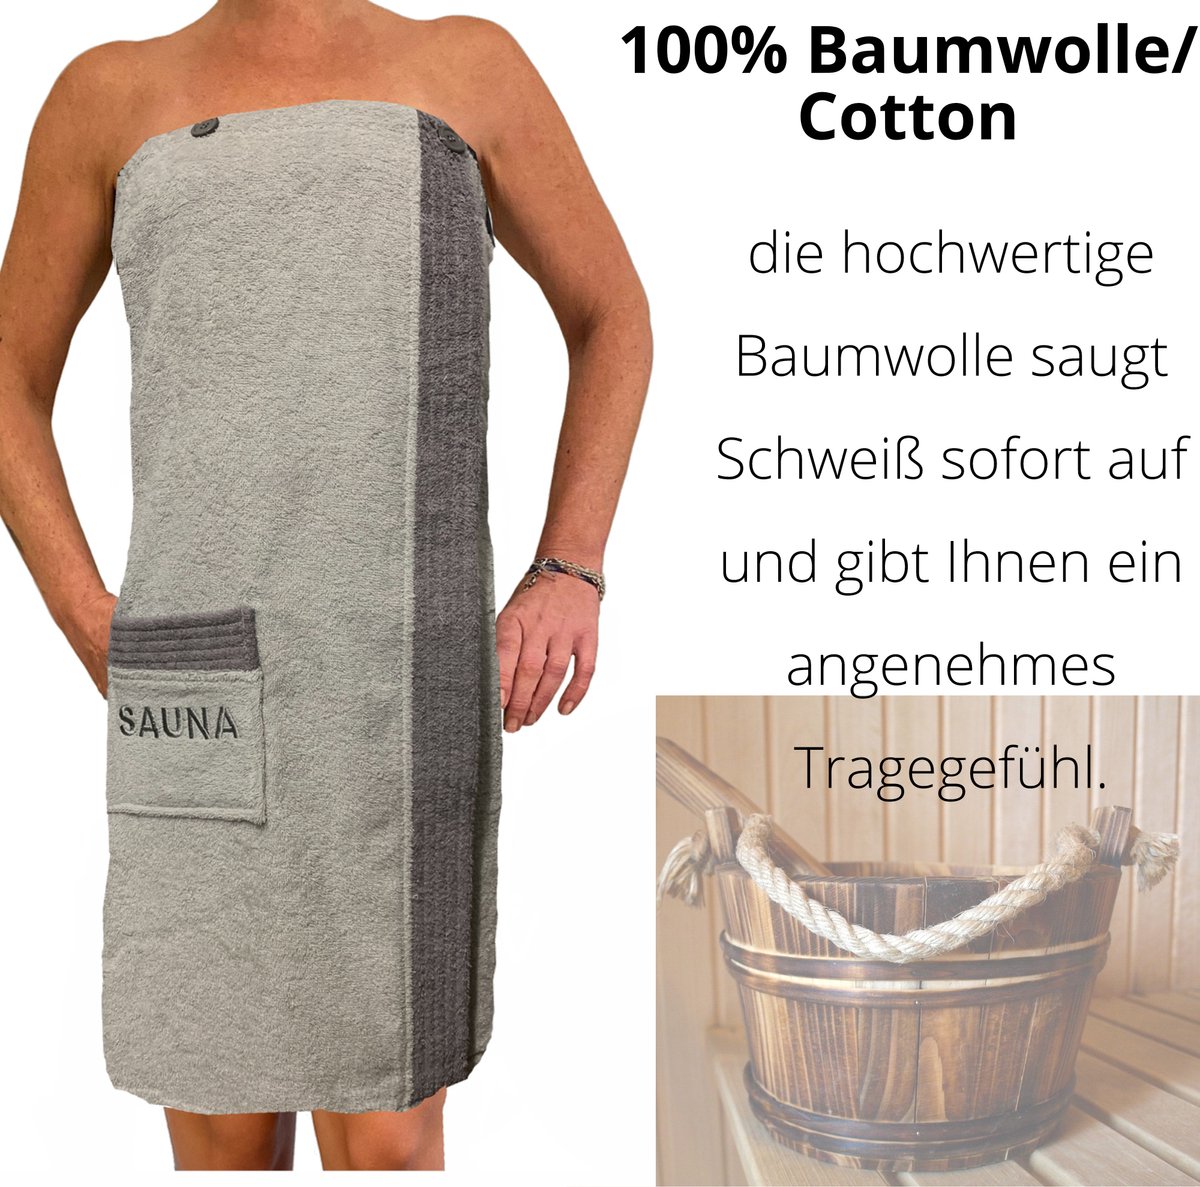 JEMIDI Sauna badstof kilt sarong M-XXL dames of heren antraciet grijs met borduursel 100% katoen sauna kilt sauna sarong sauna handdoek - Grijs